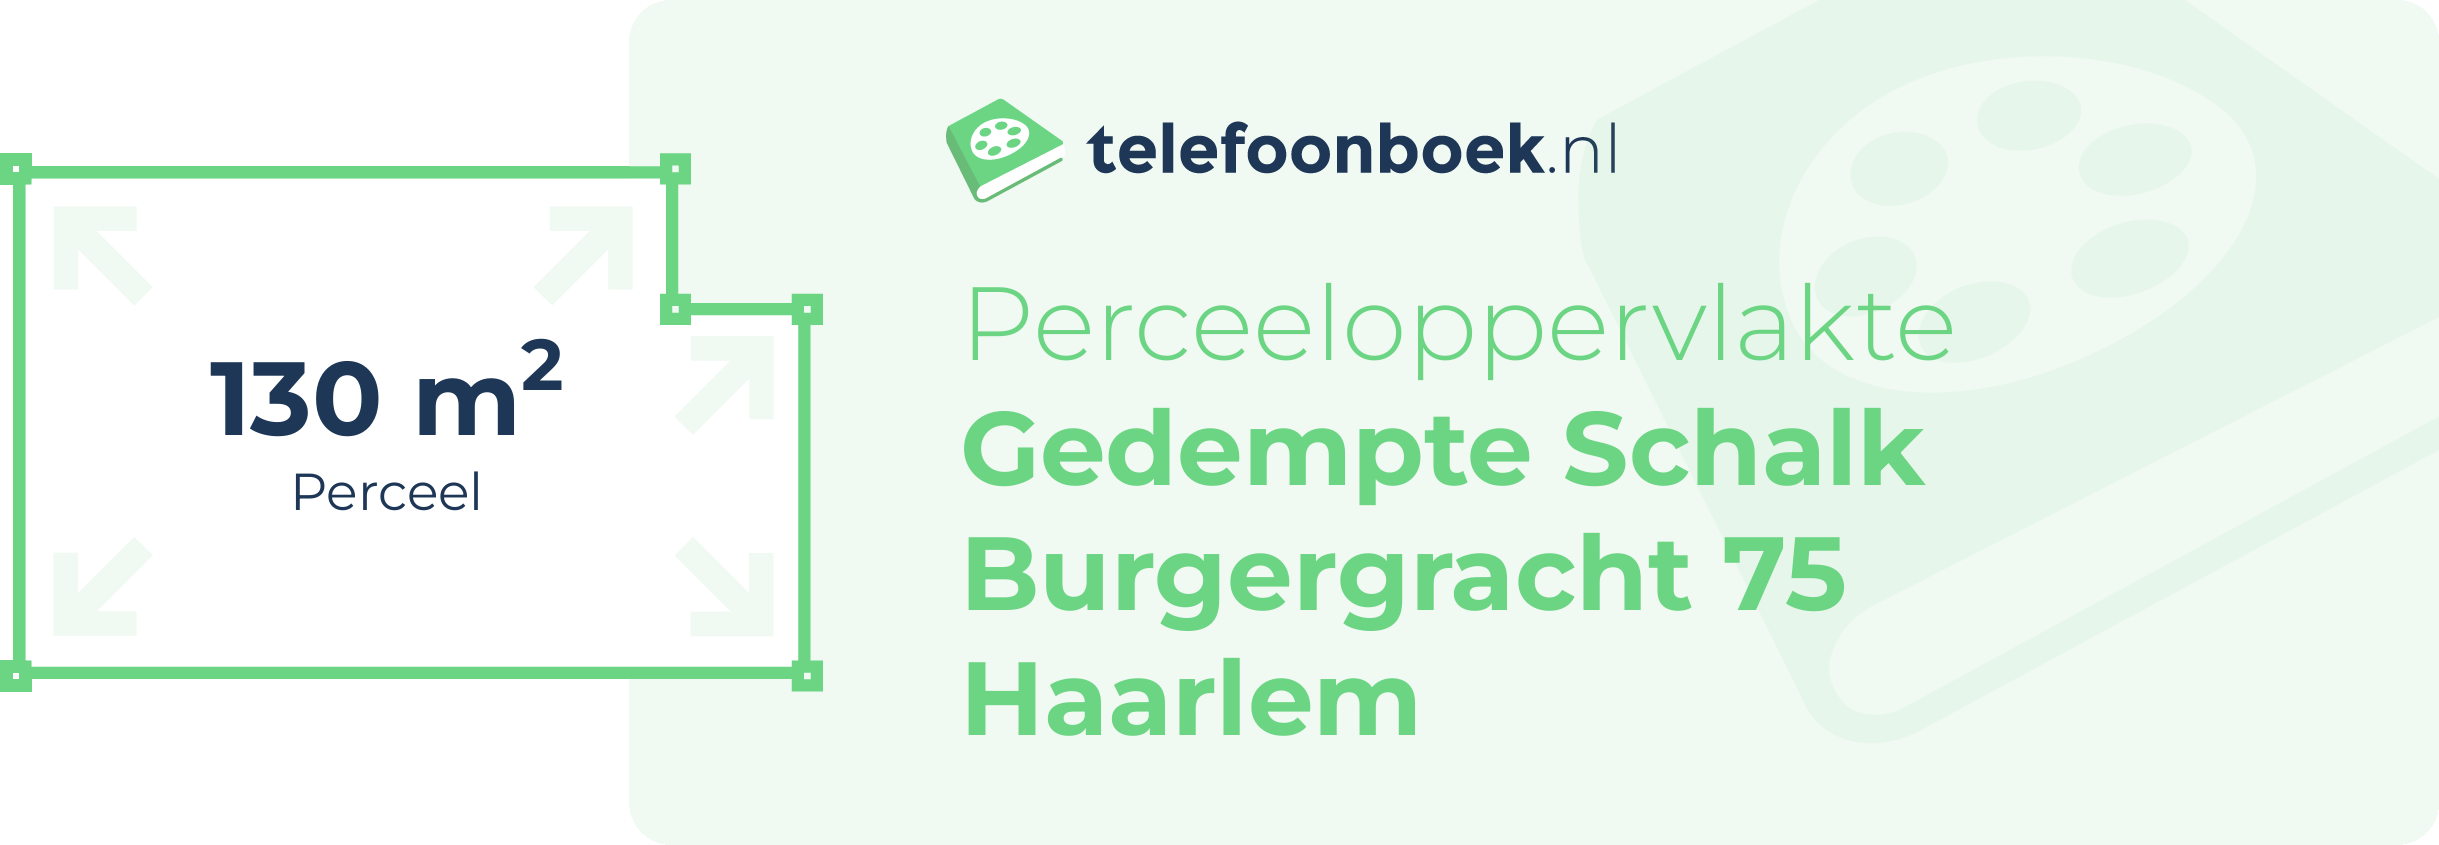 Perceeloppervlakte Gedempte Schalk Burgergracht 75 Haarlem